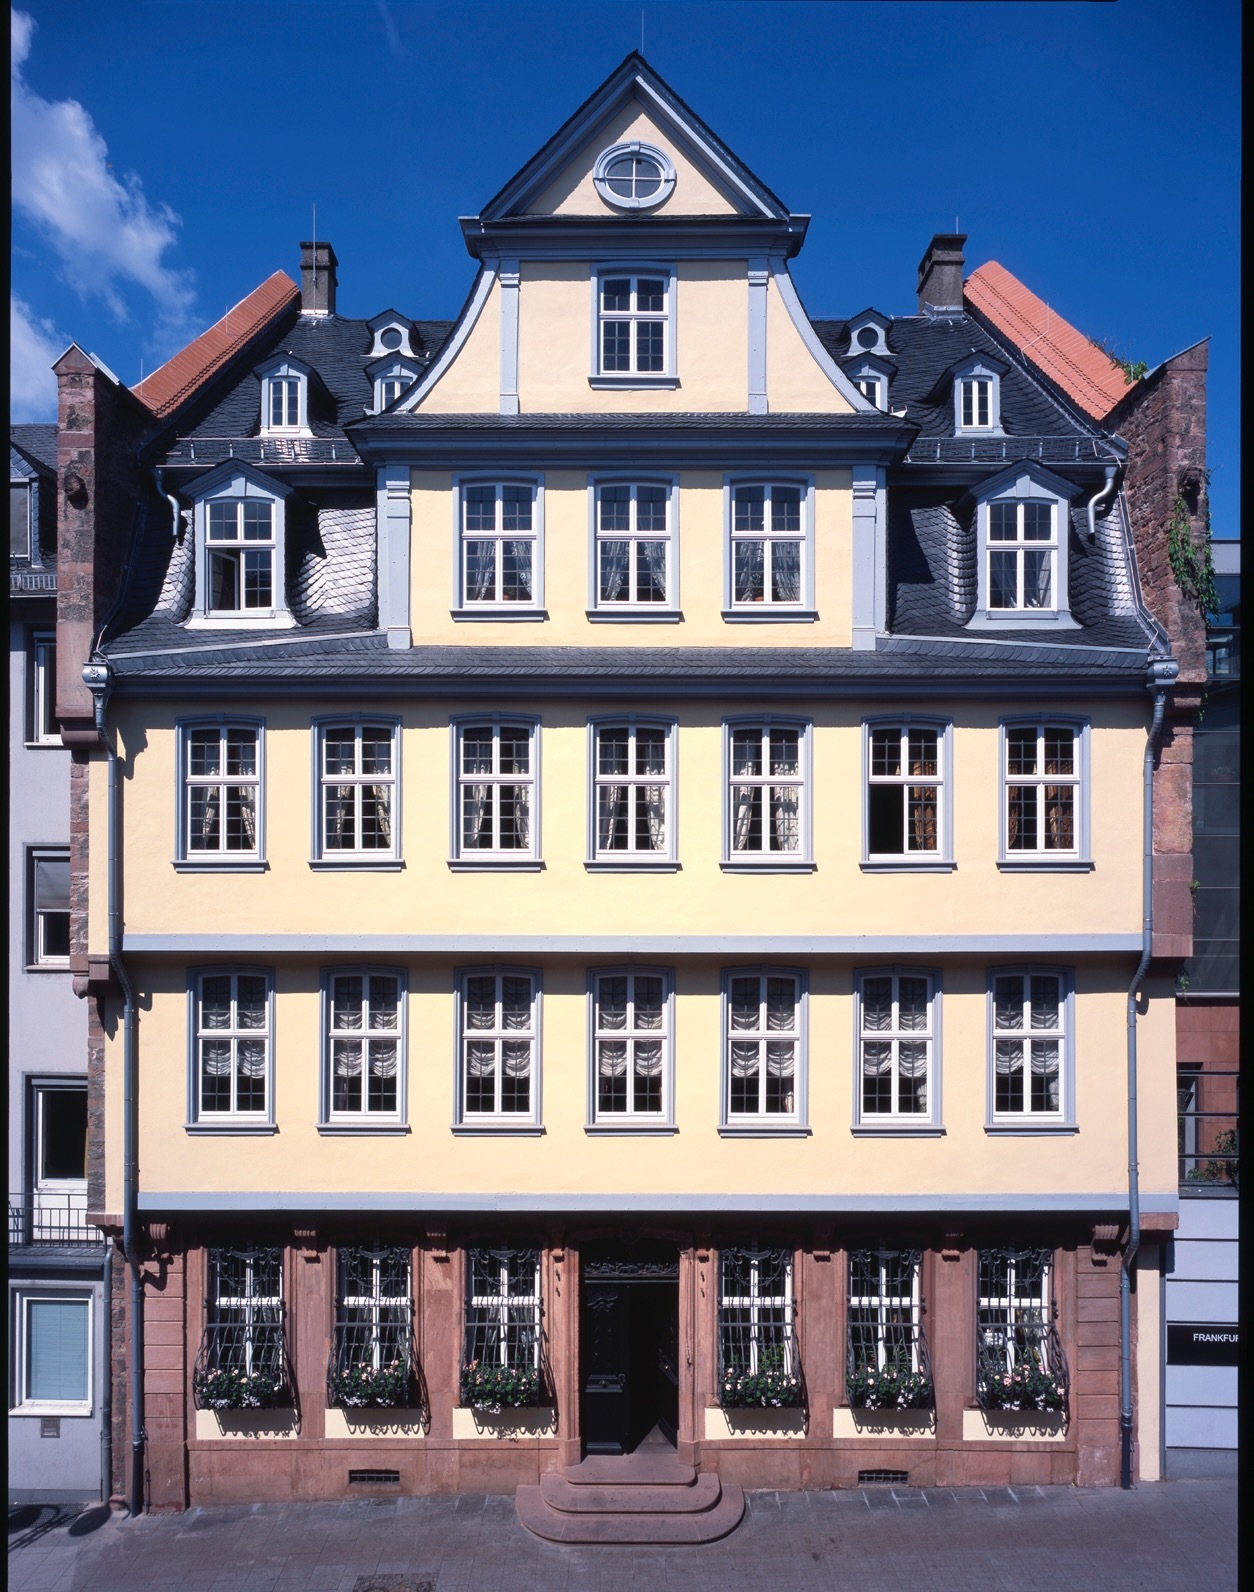 Das Goethe-Haus wird jedes Jahr von über 130 000 Menschen besucht., Credit: © Freies Deutsches Hochstift/David Hall